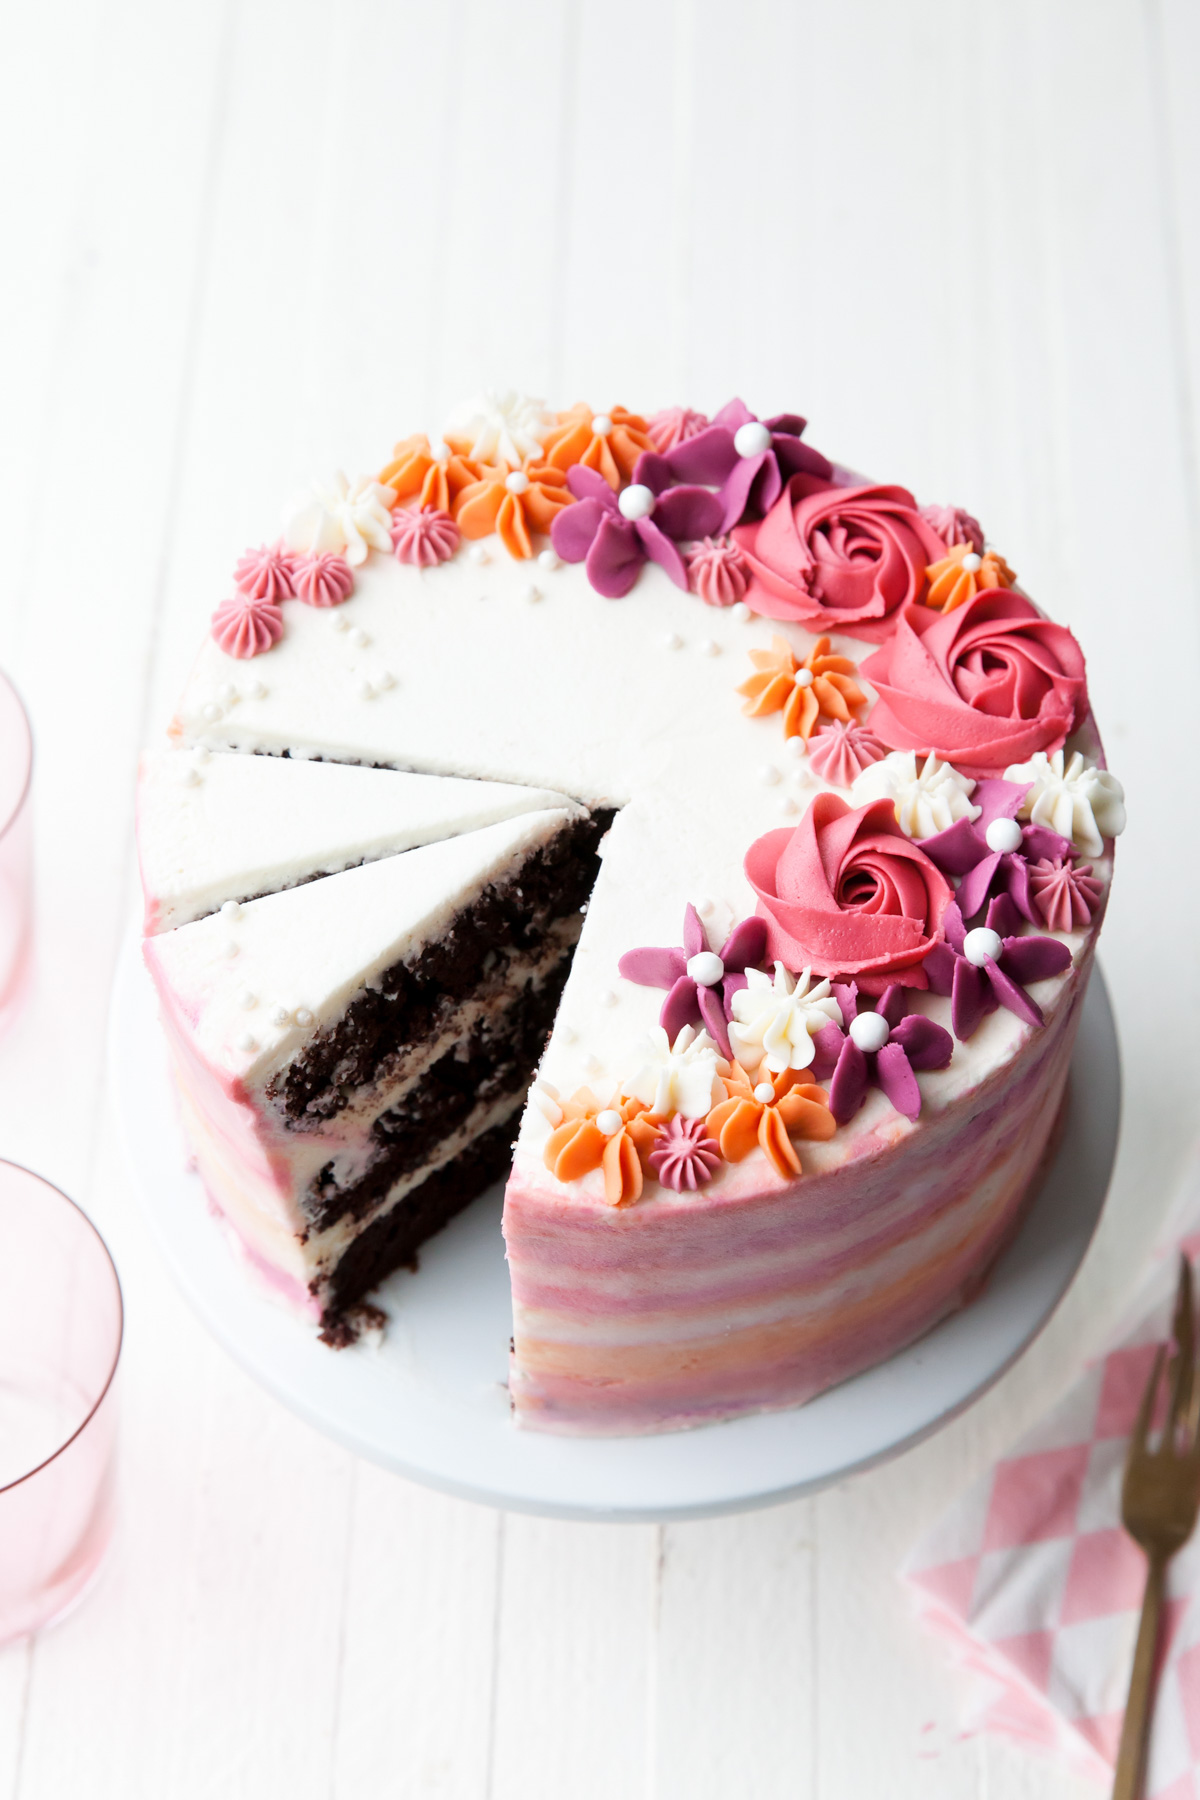 Purple Whipped Cream Rose Cake Tutorial | Flower Cake Design - YouTube